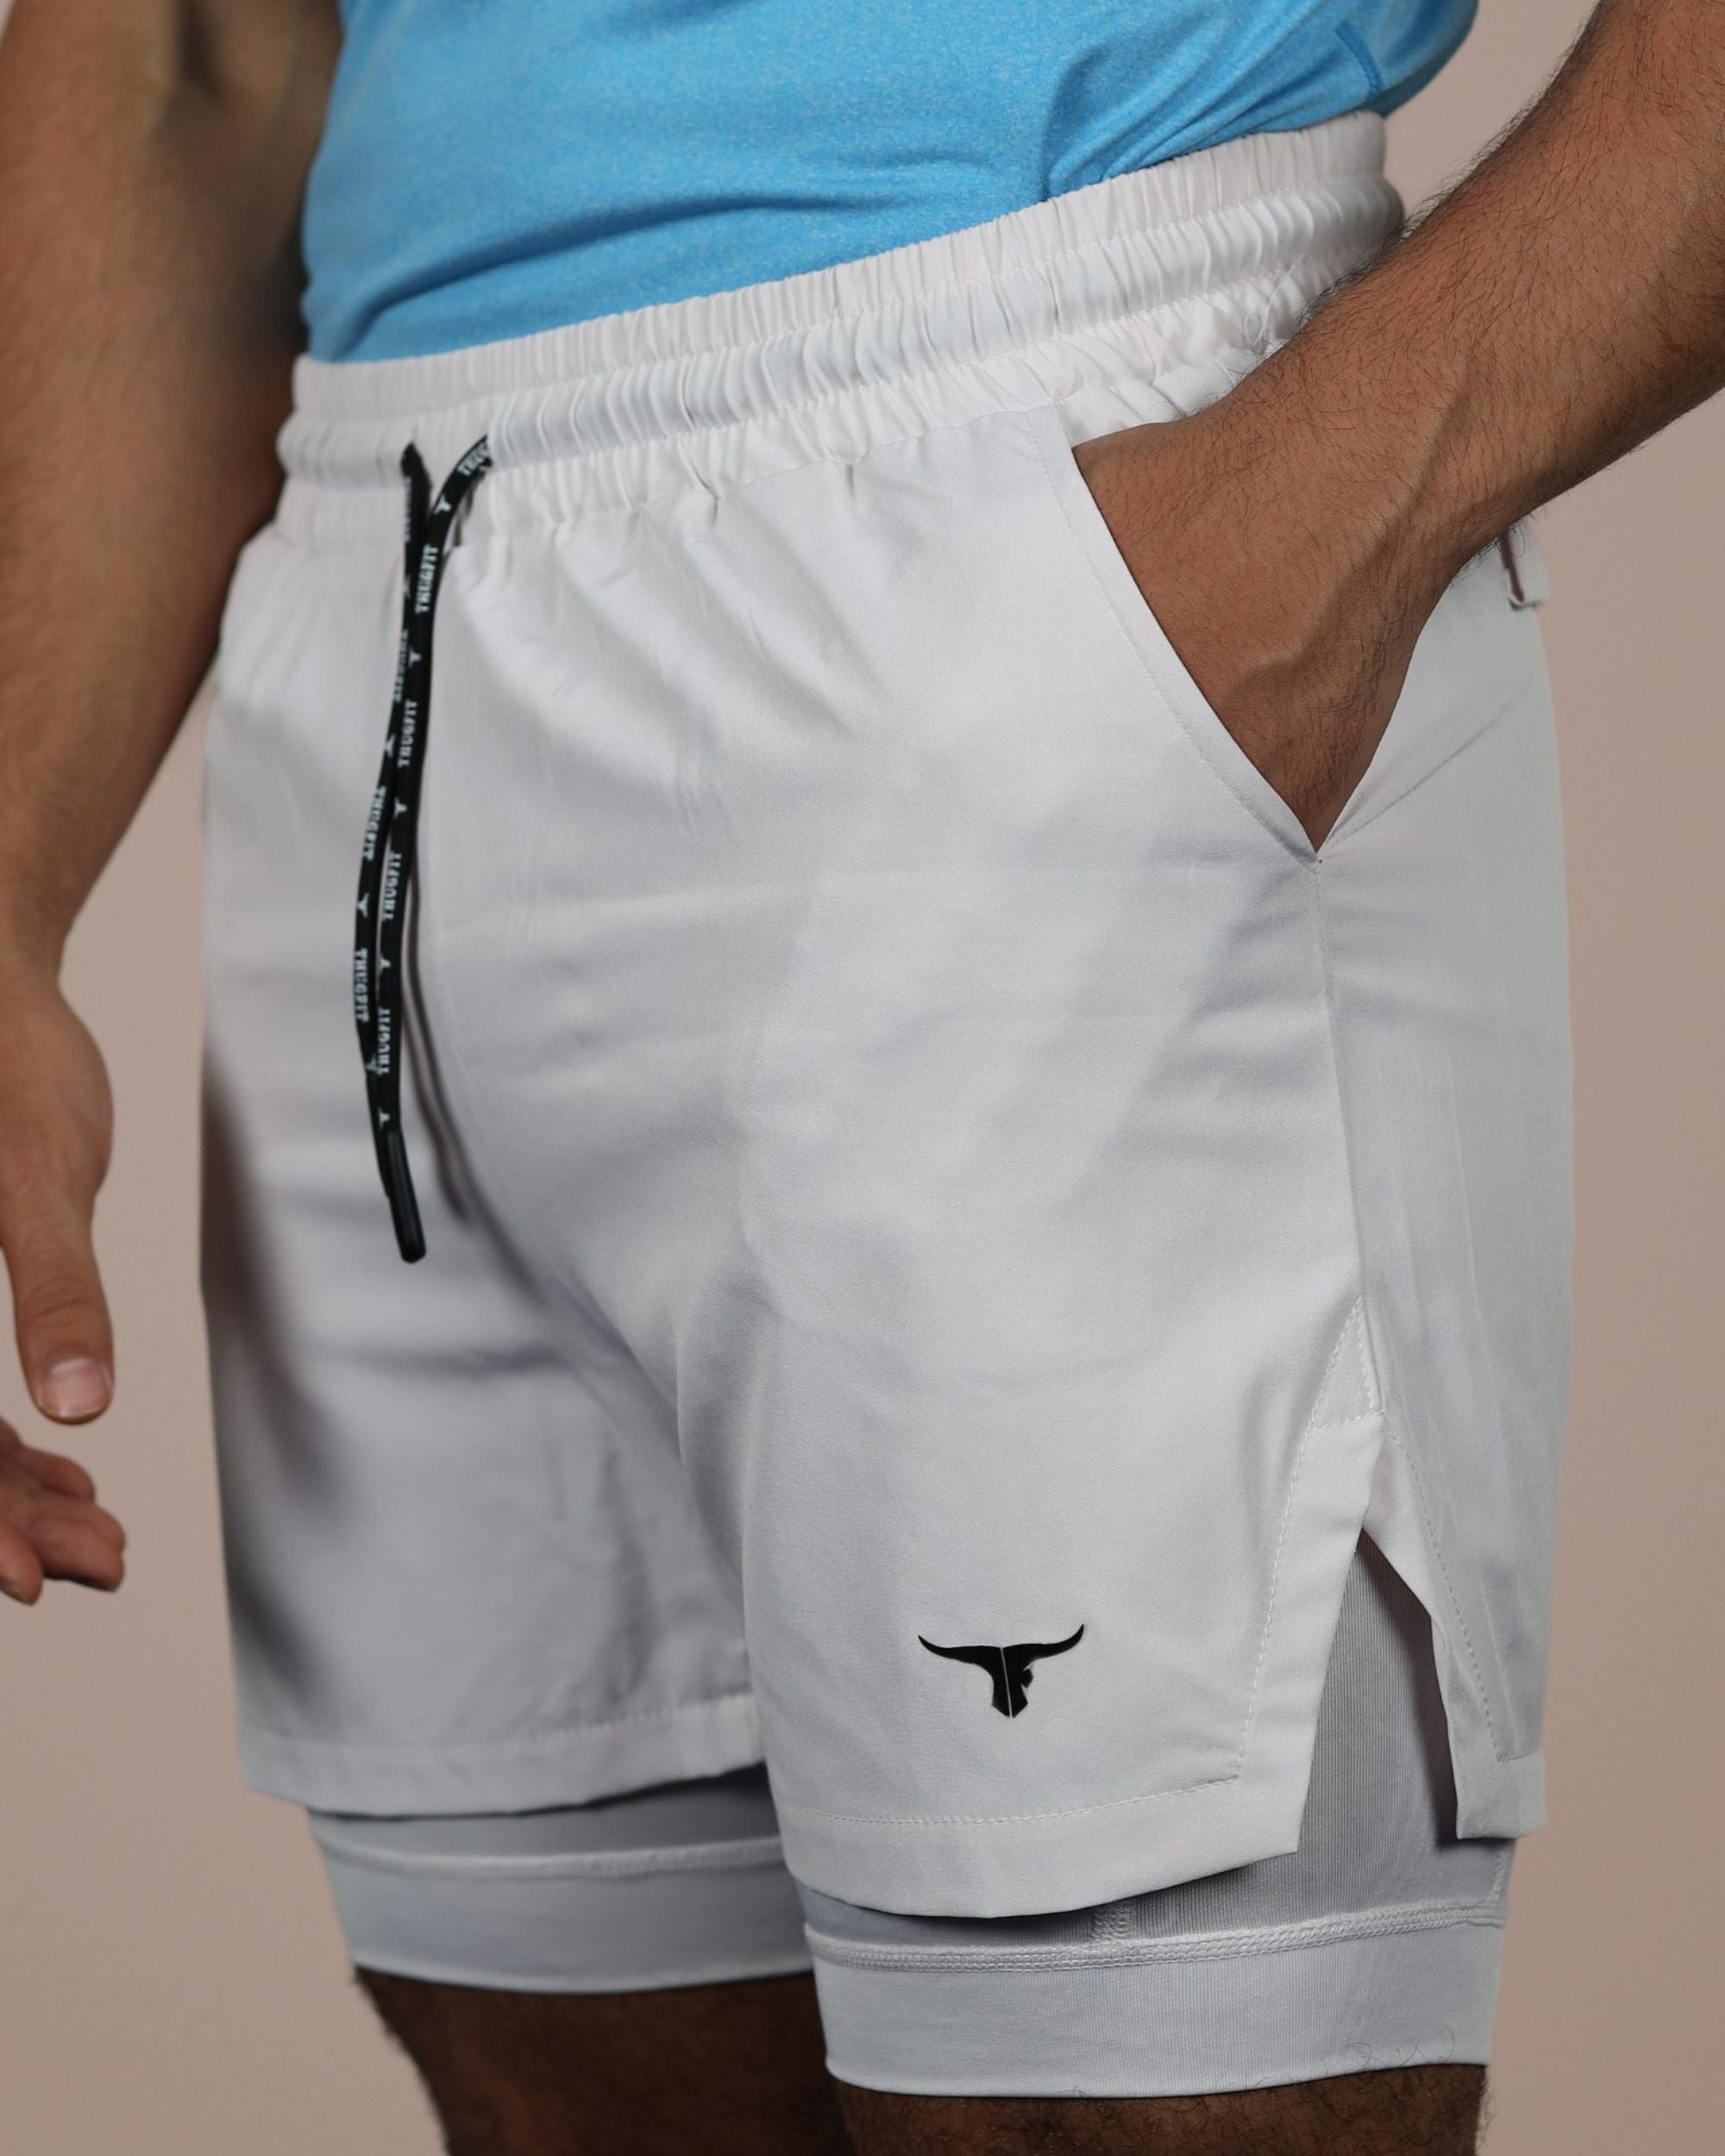 SprintHint 2 in 1 Shorts (7" Inseam) - White